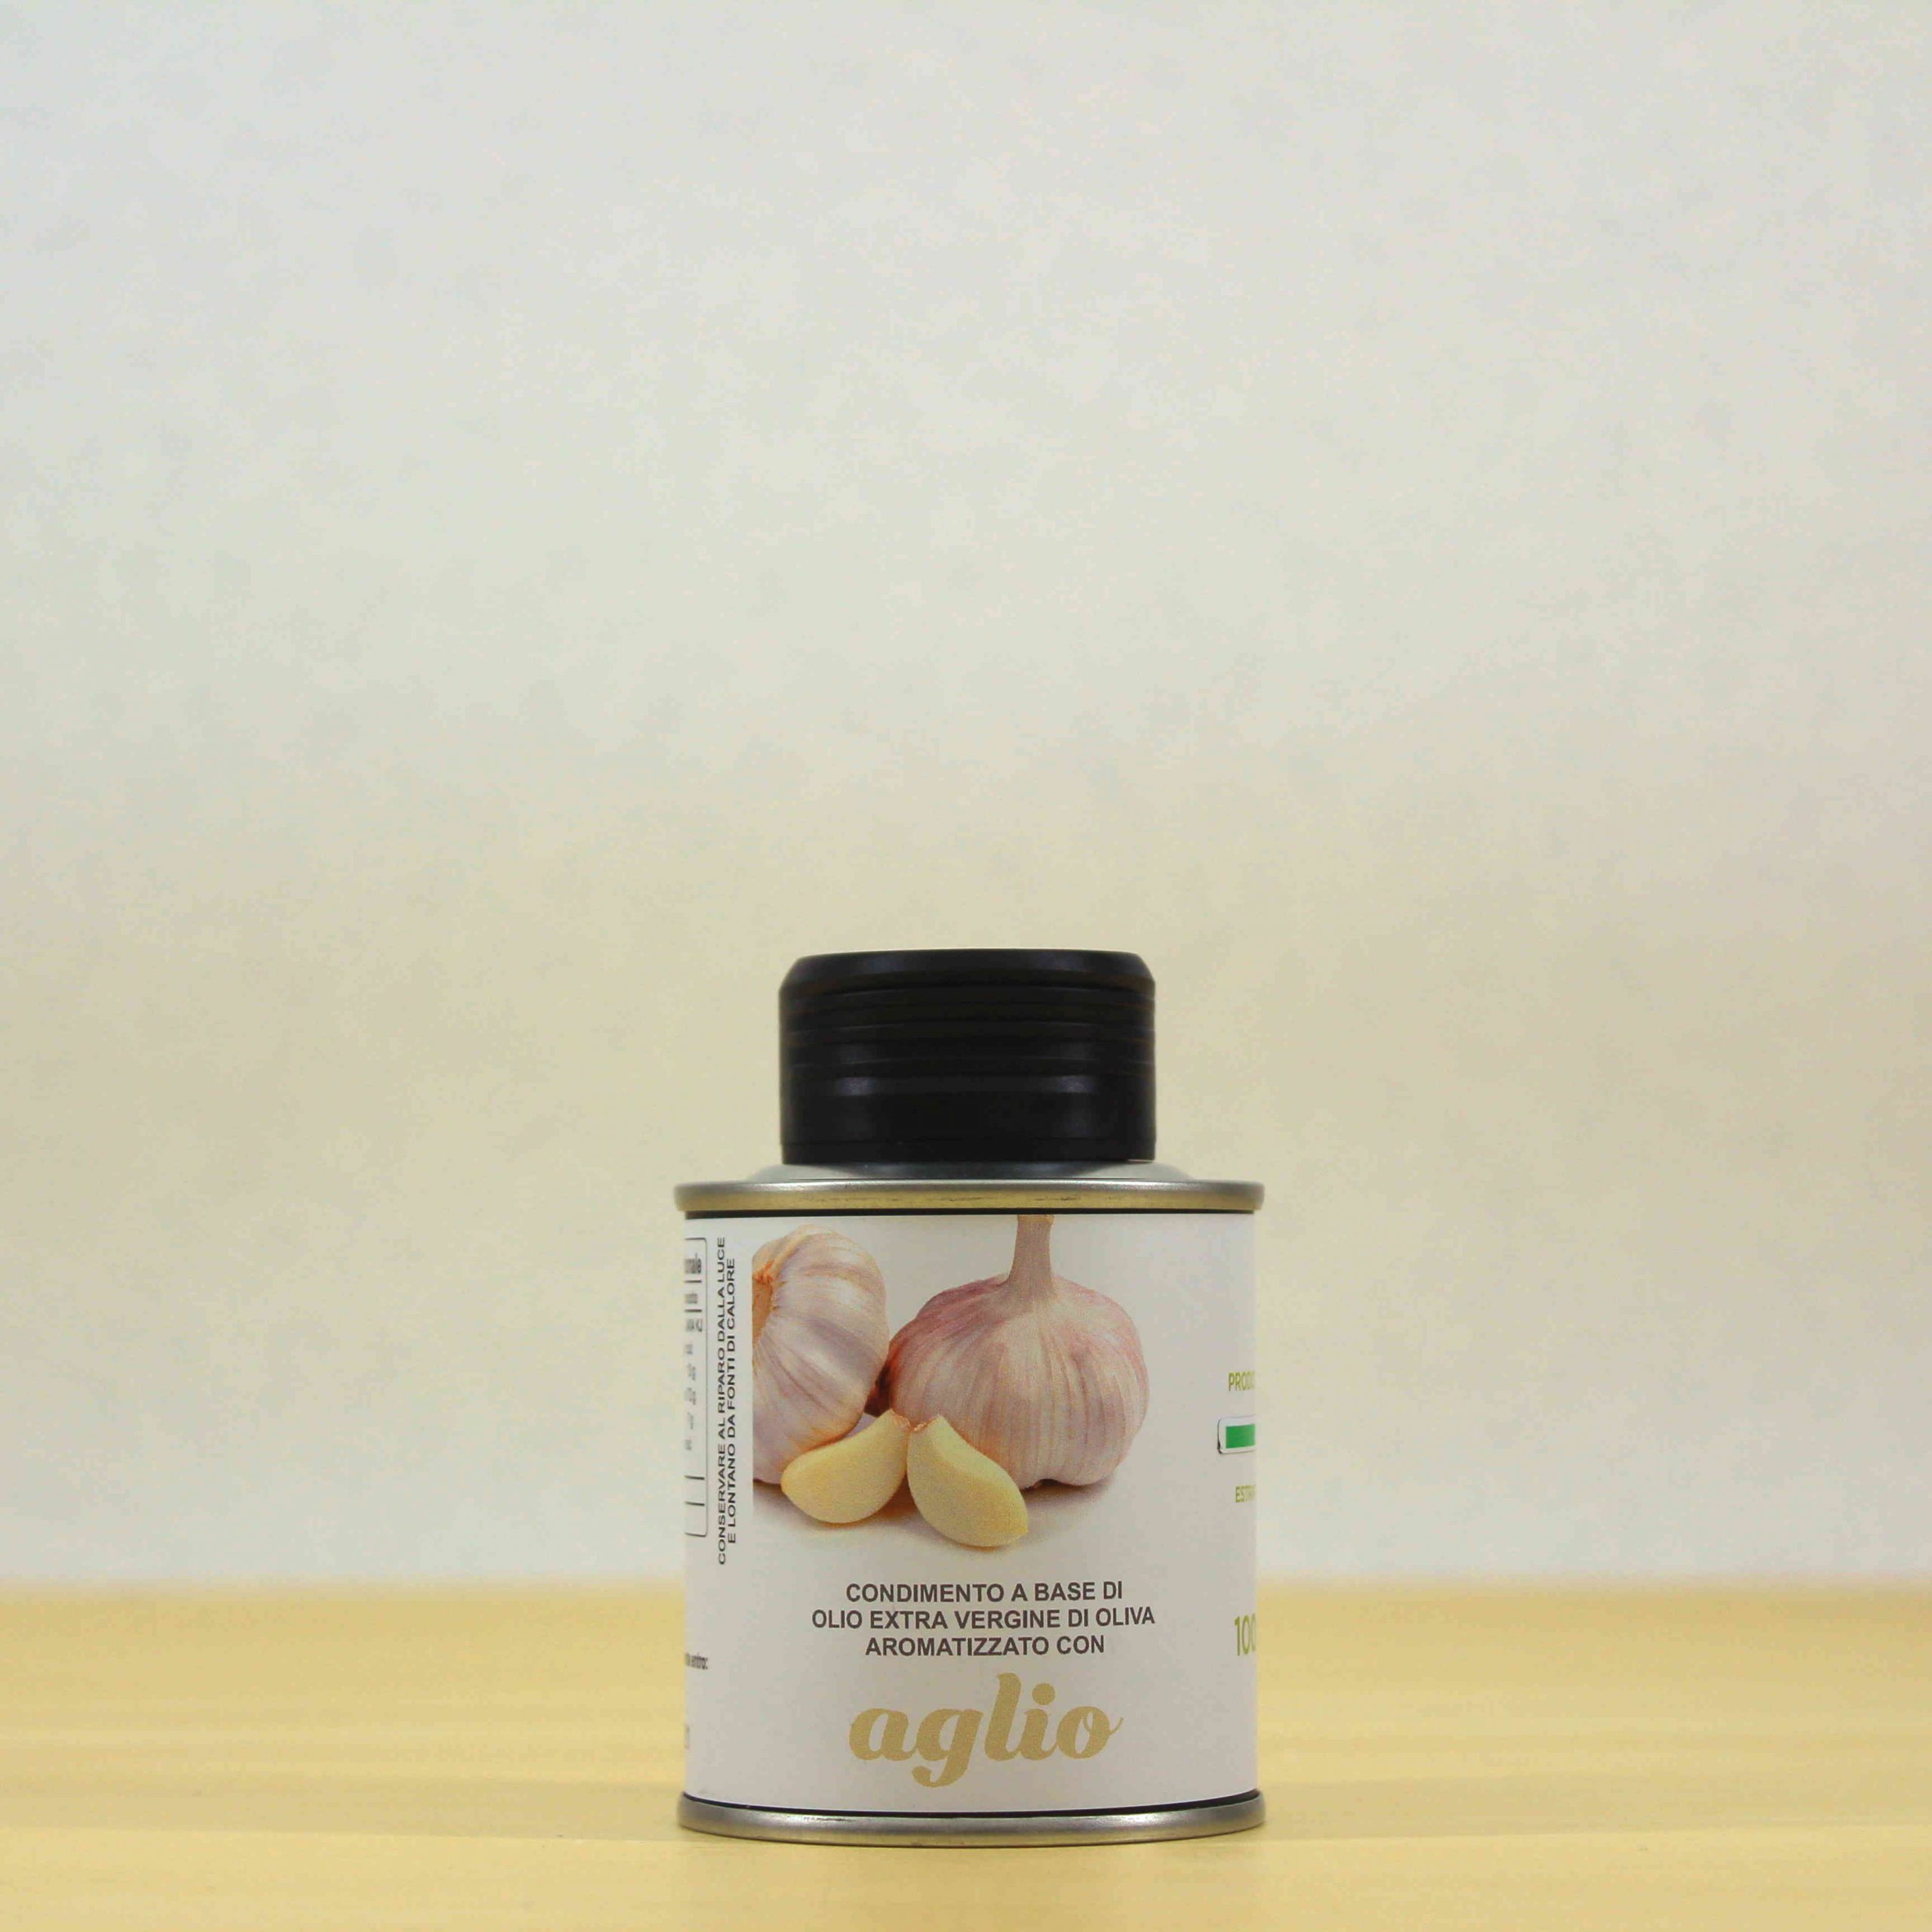 Condimento a base di olio EVO aromatizzato all’Aglio - lattina 10 cl - Cipa Agricola - Acquista online